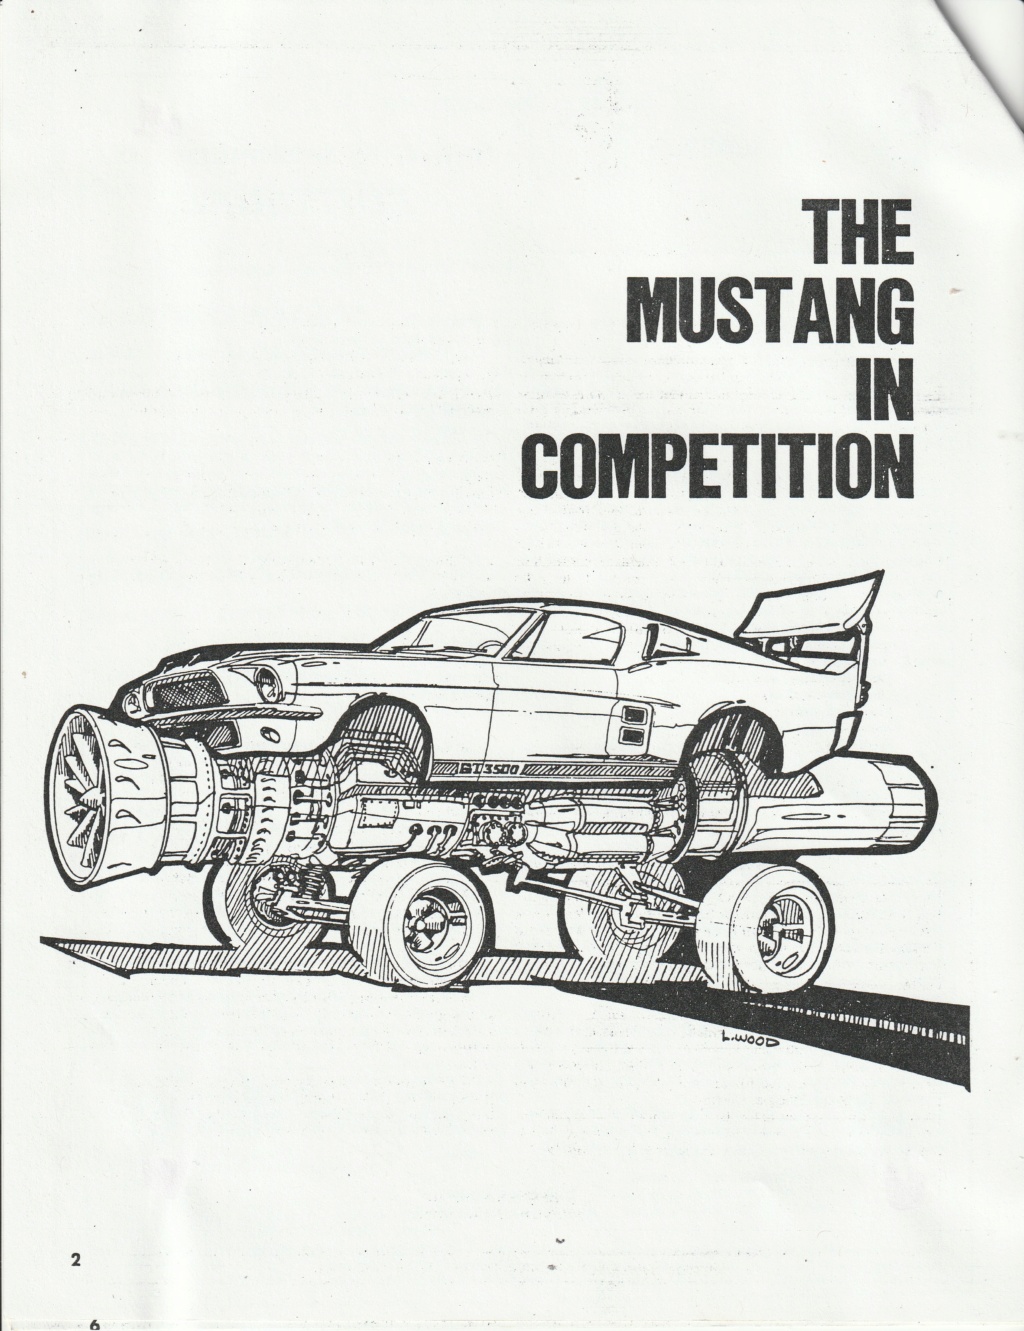 Montréal Mustang dans le temps! 1981 à aujourd'hui (Histoire en photos) - Page 2 Img_2040